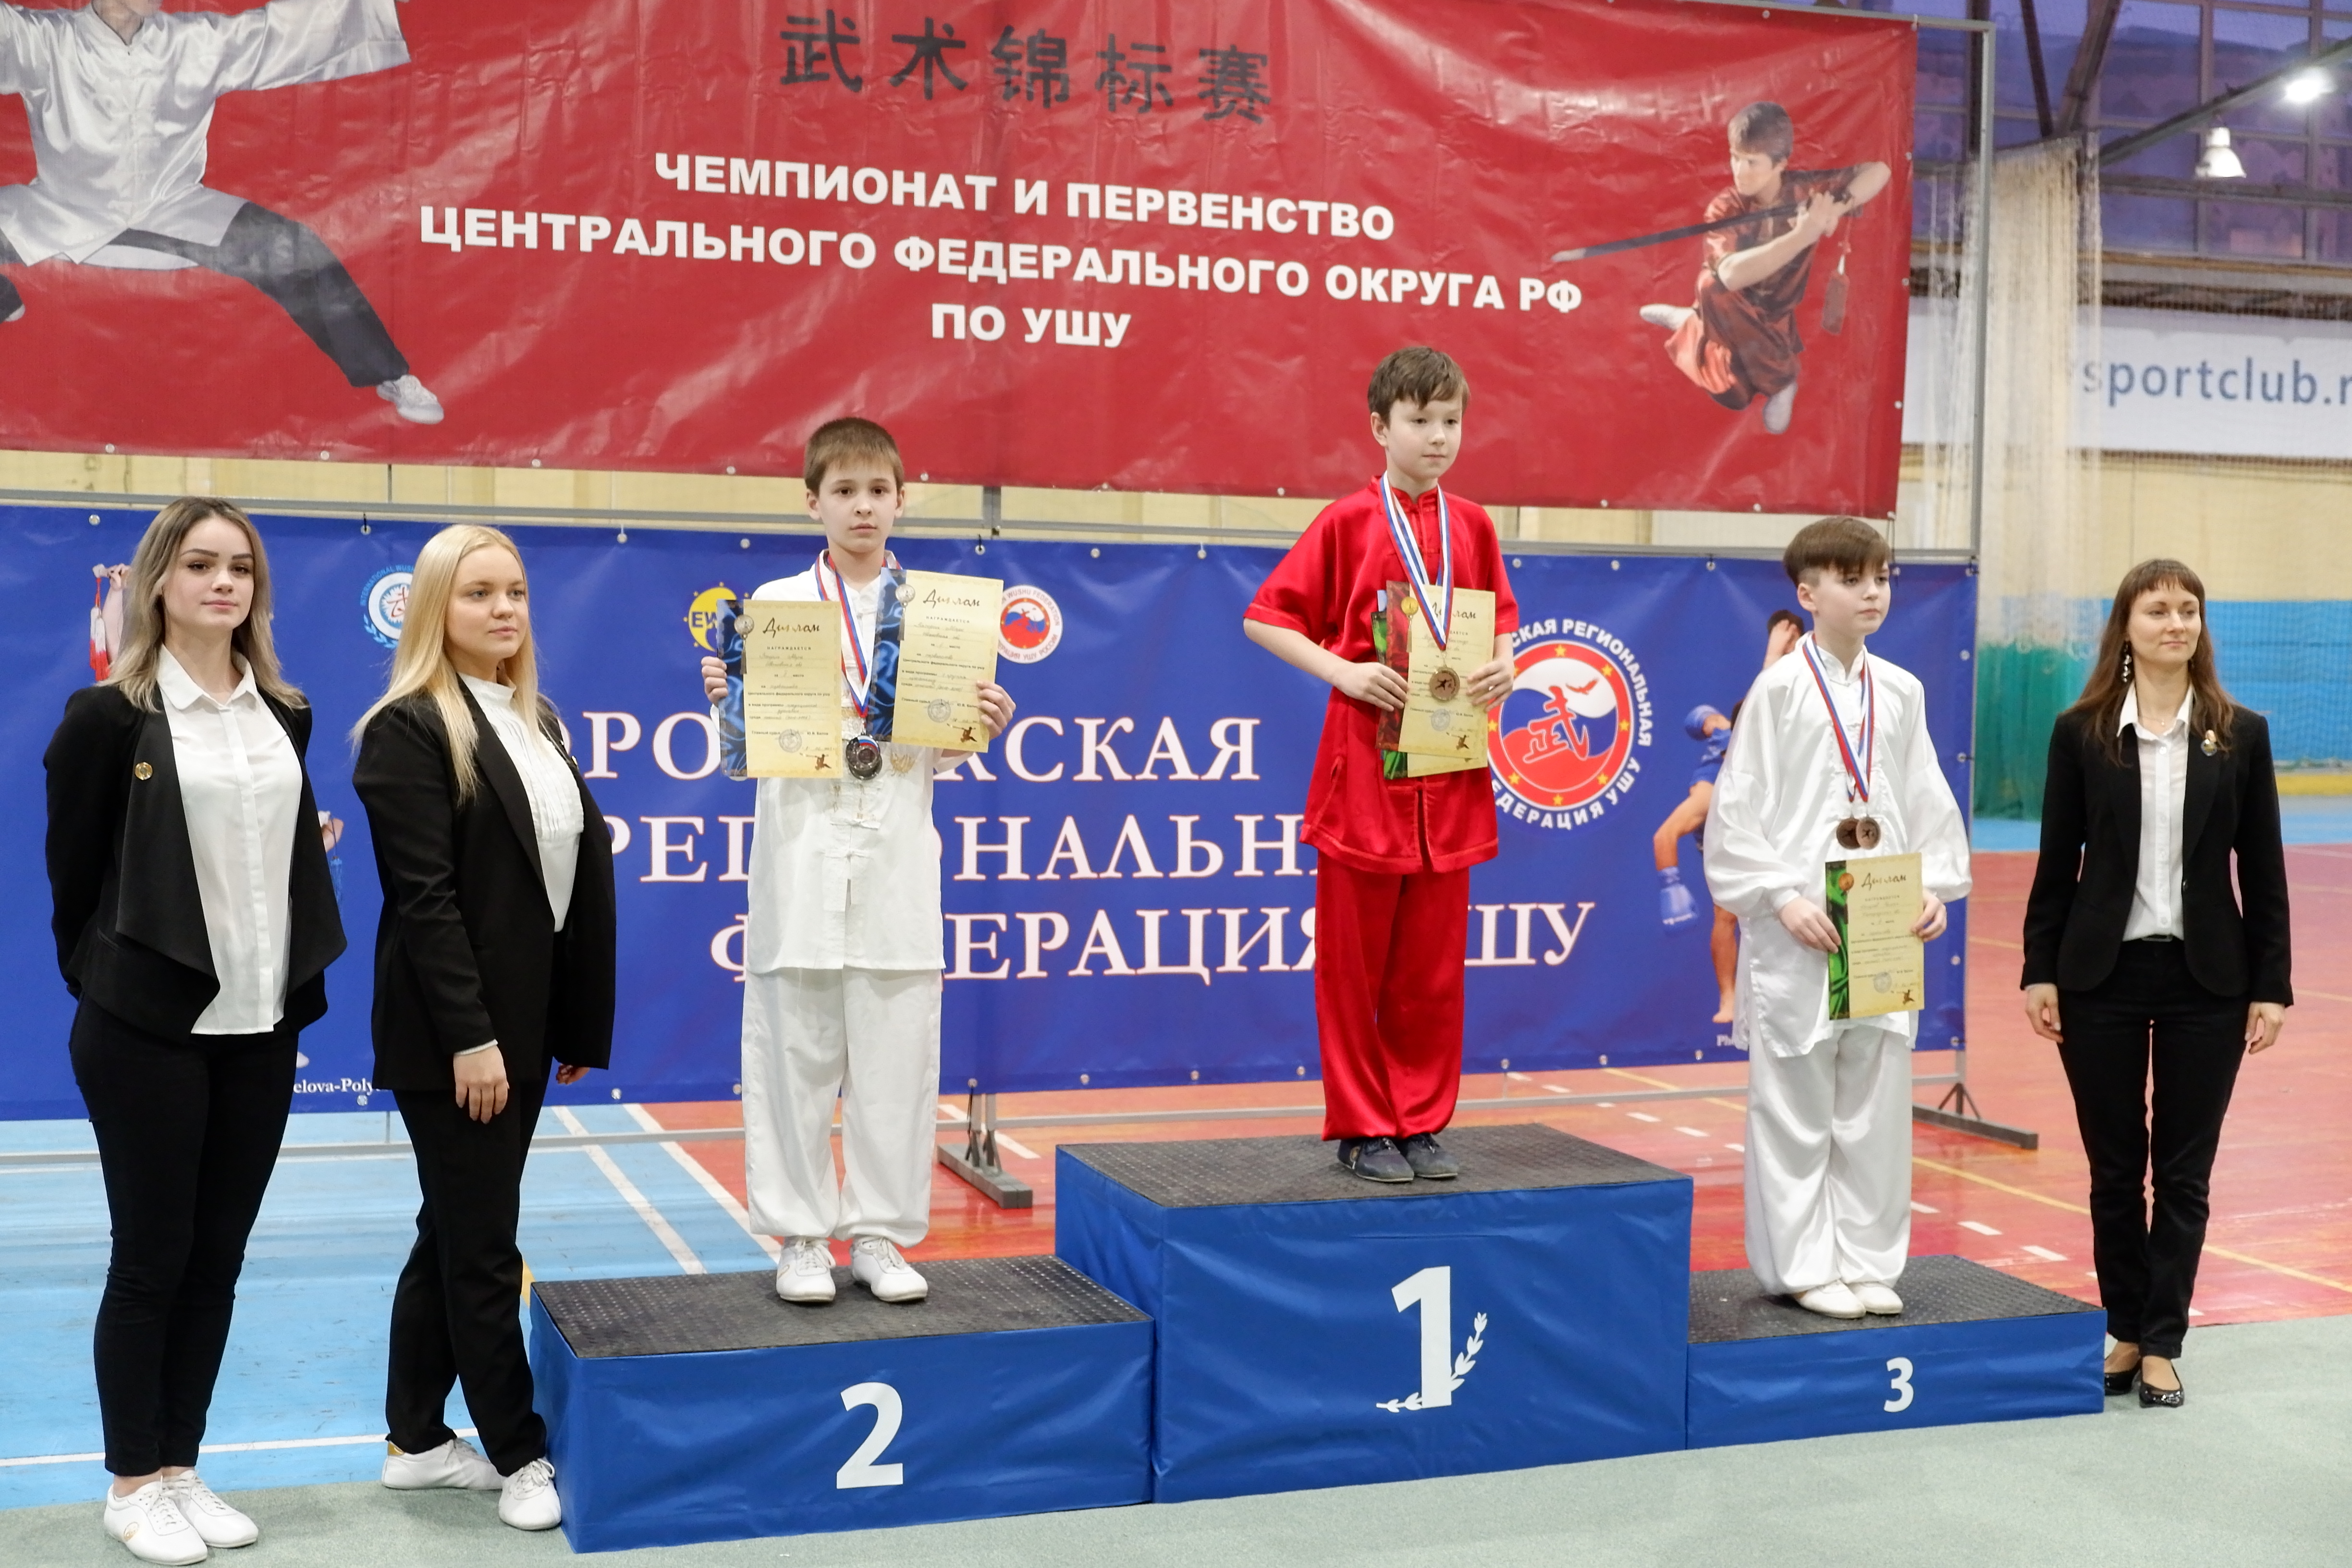 Сборная Ивановской области завоевала более 160 медалей на чемпионате и первенстве ЦФО по ушу